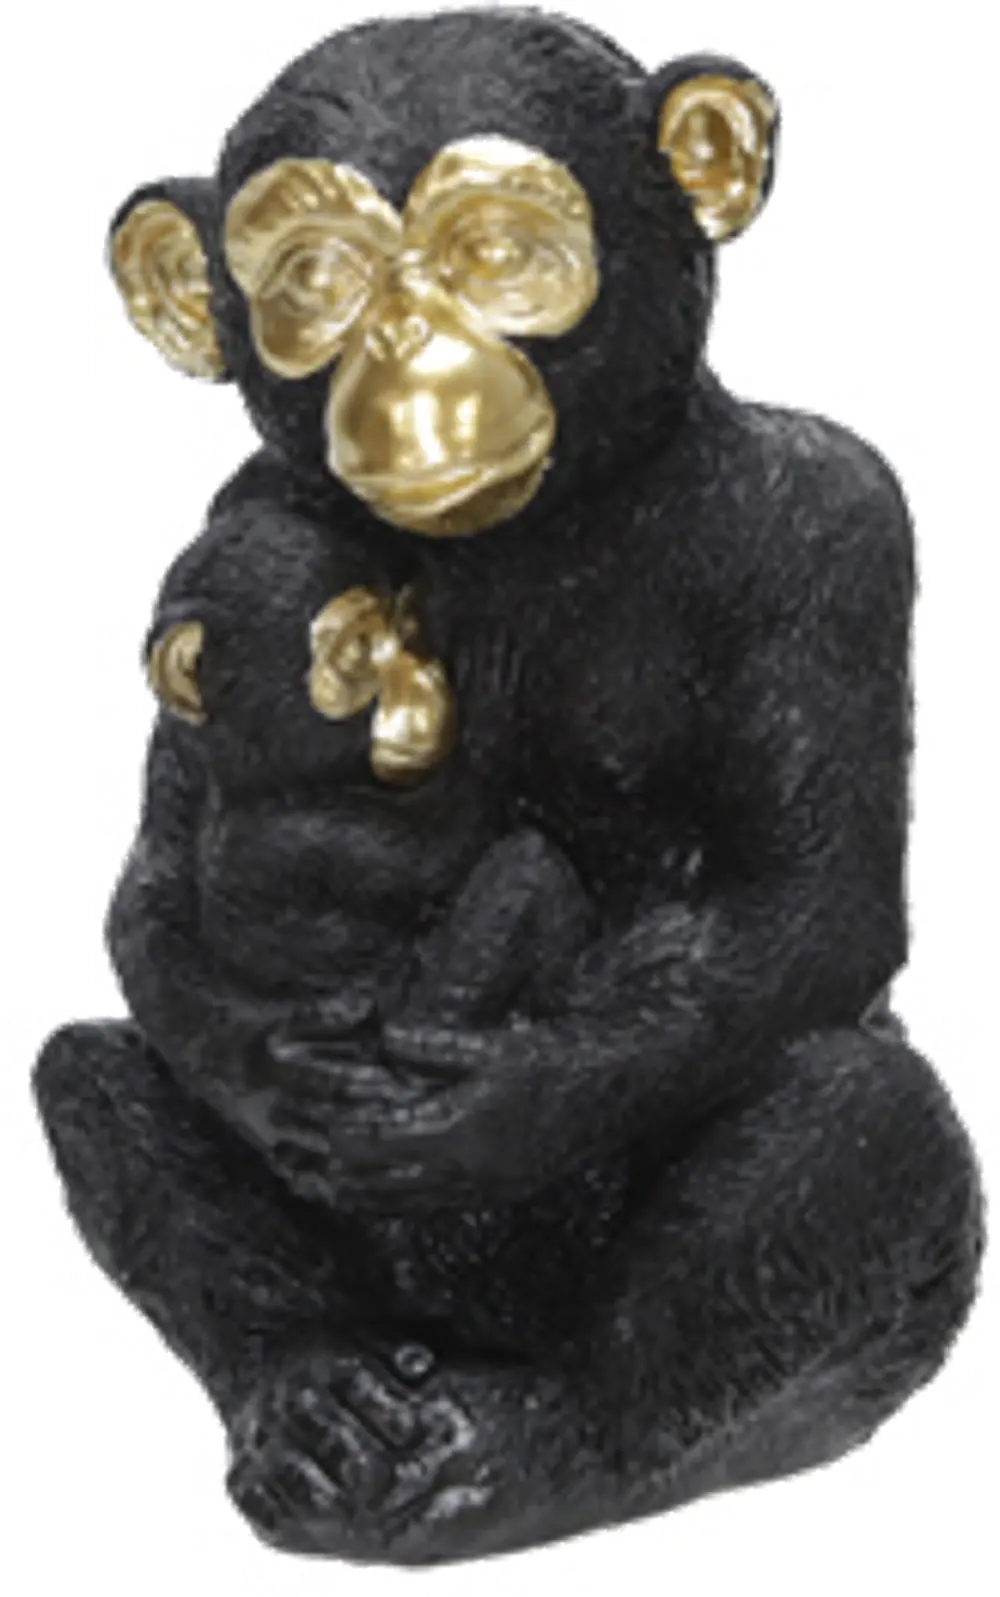 9 Inch Black Polyresin Monkey Figurine Sculpture-1